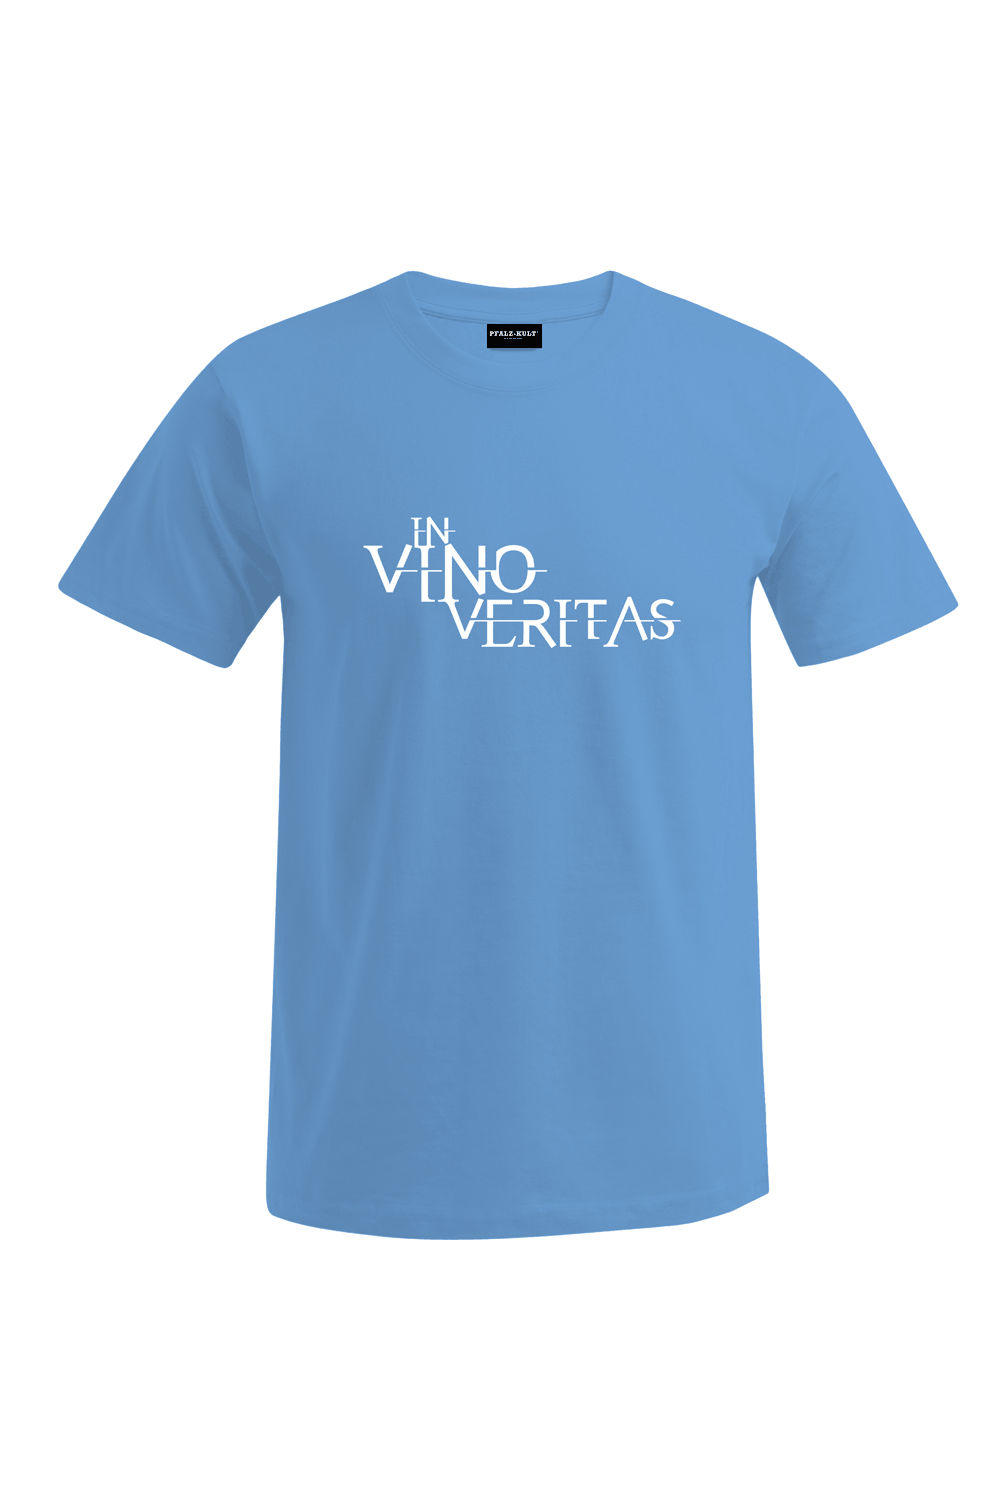 In vino veritas - Männer T-Shirt - Unisex